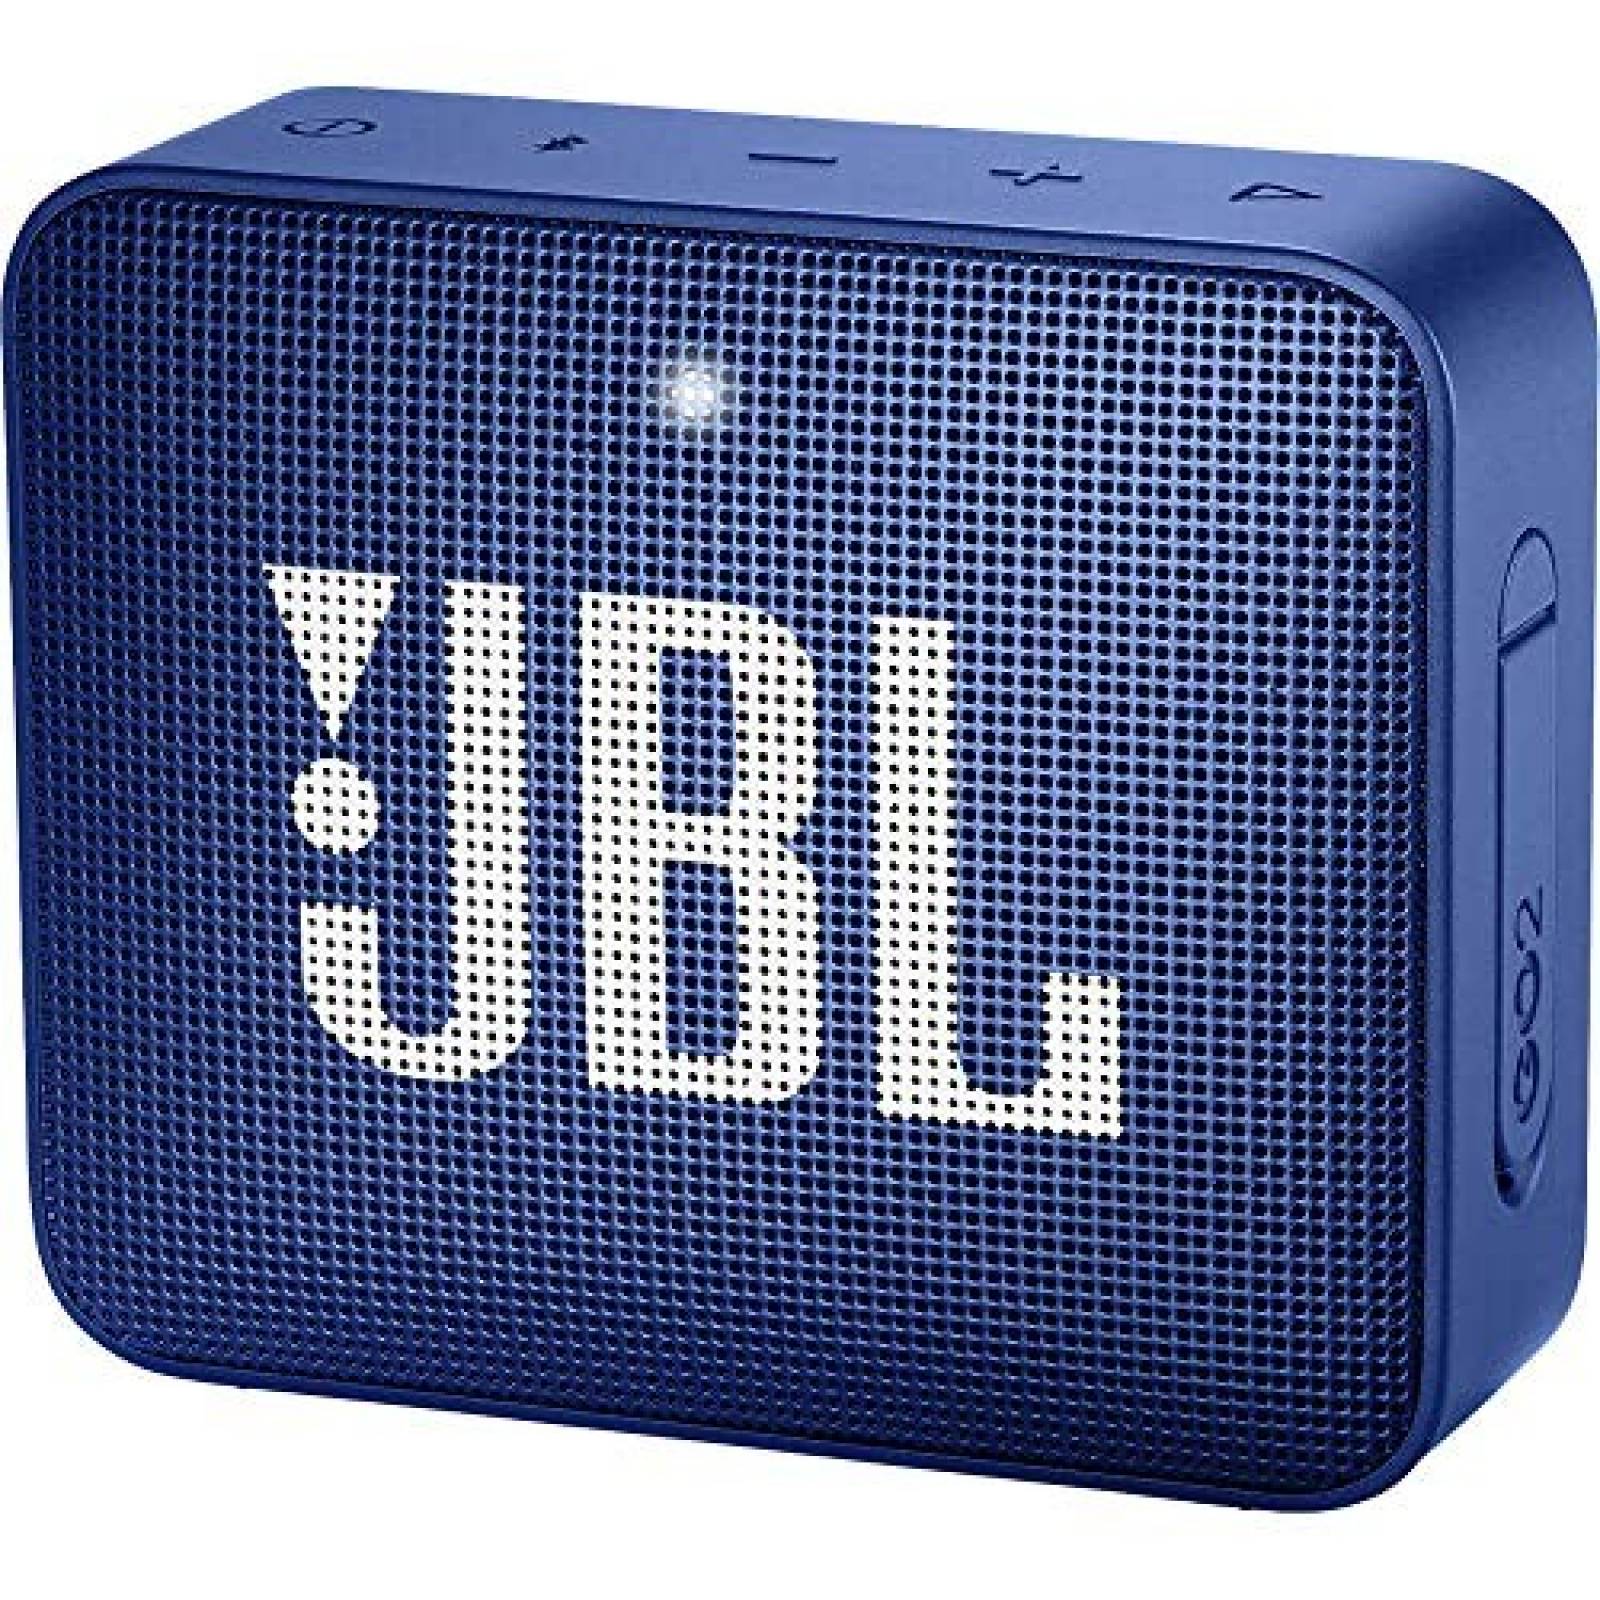 Bocina portátil JBL GO2 impermeable bluetooth -Azul